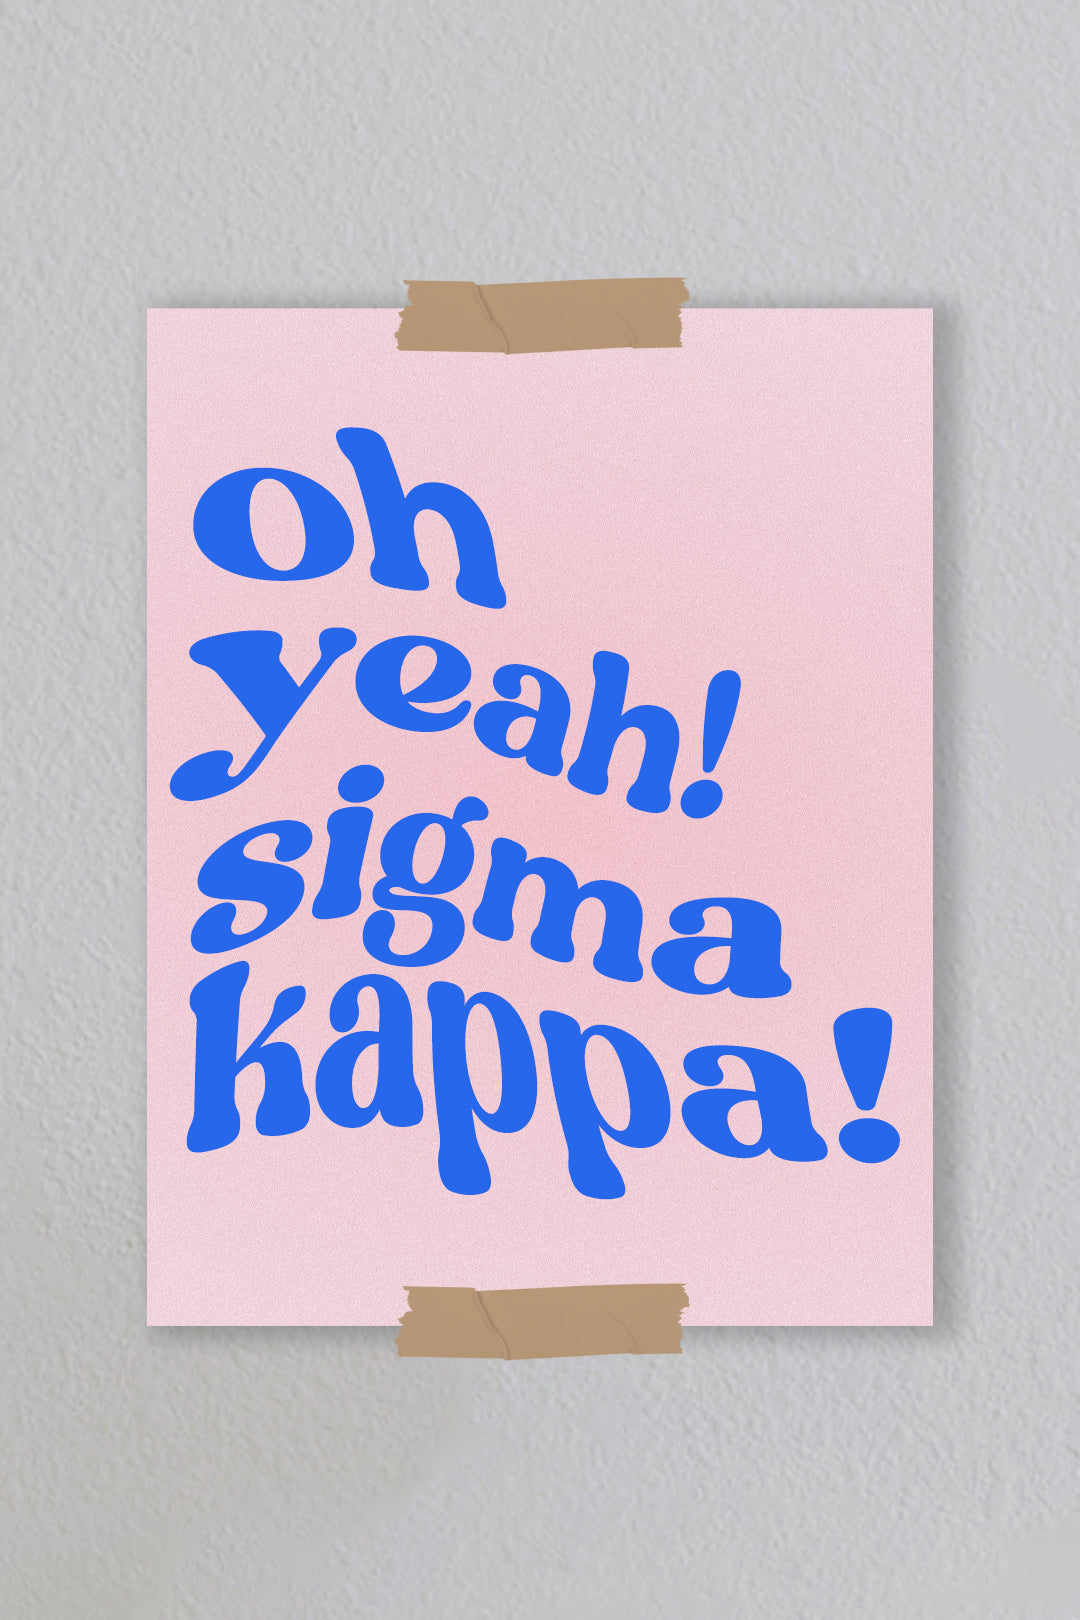 Sigma Kappa - Art Print #11 (8.5x11)